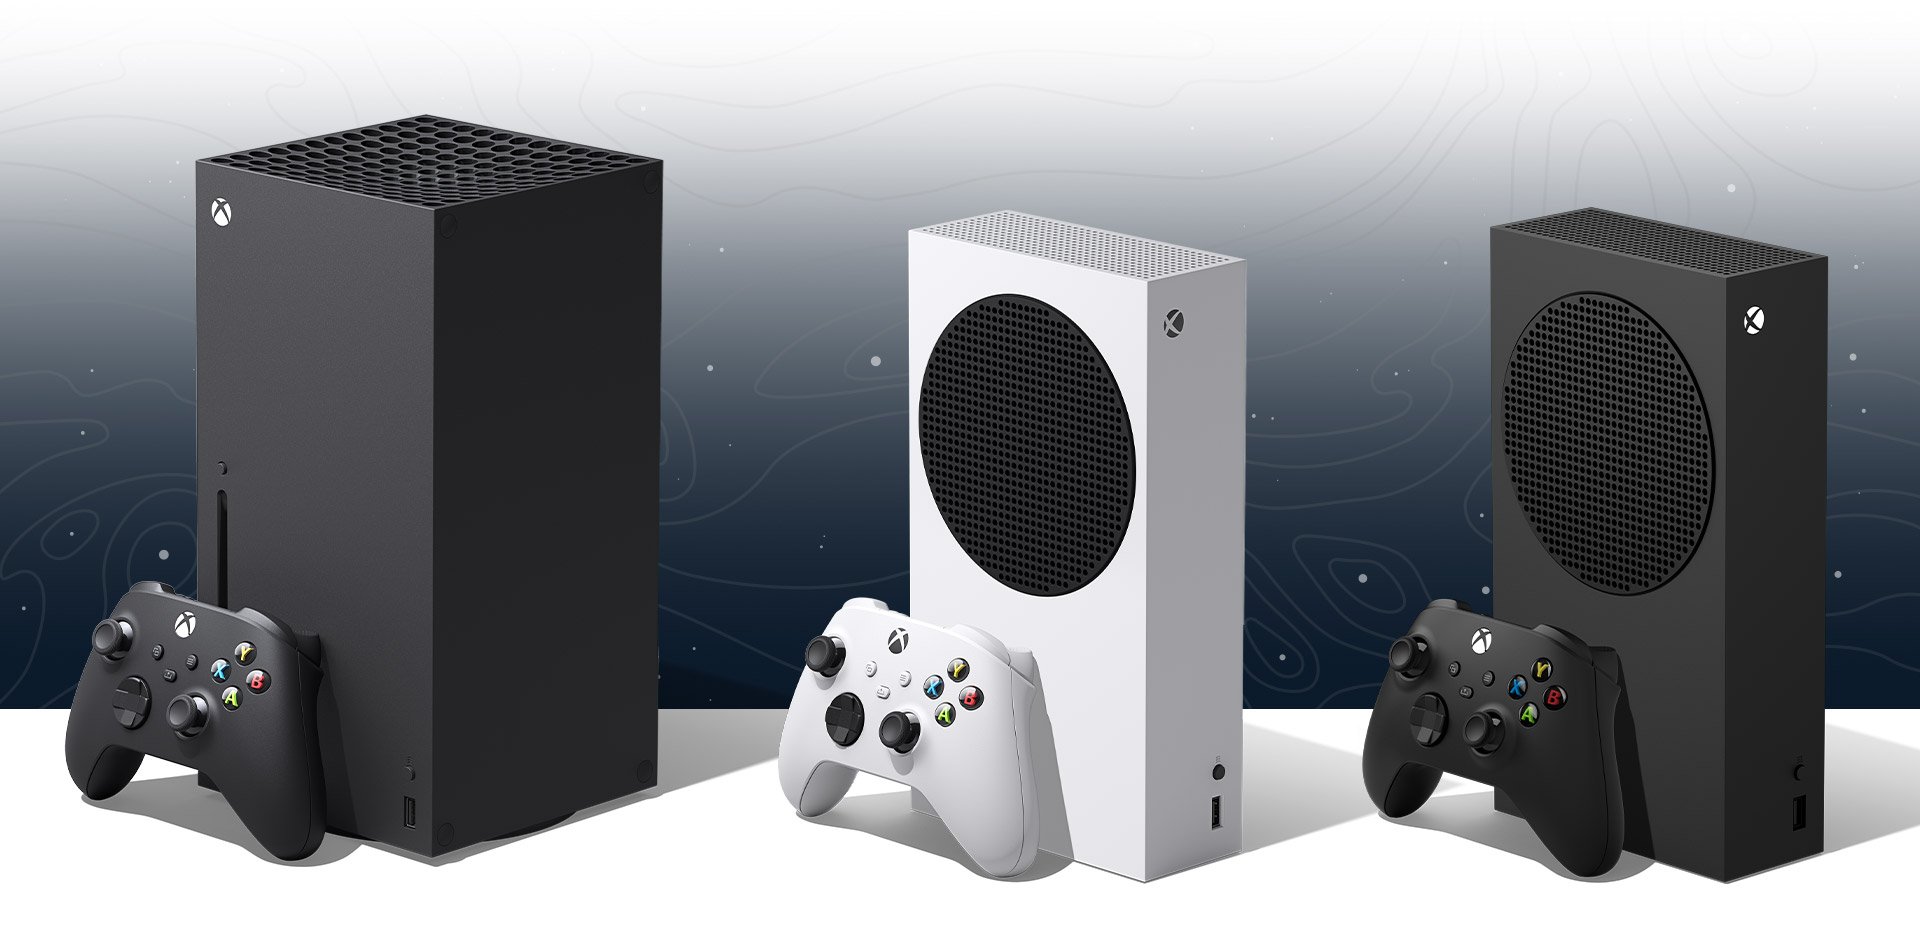 Według doniesień niektórzy wydawcy kwestionują wsparcie Xbox w związku z „płaską” sprzedażą.